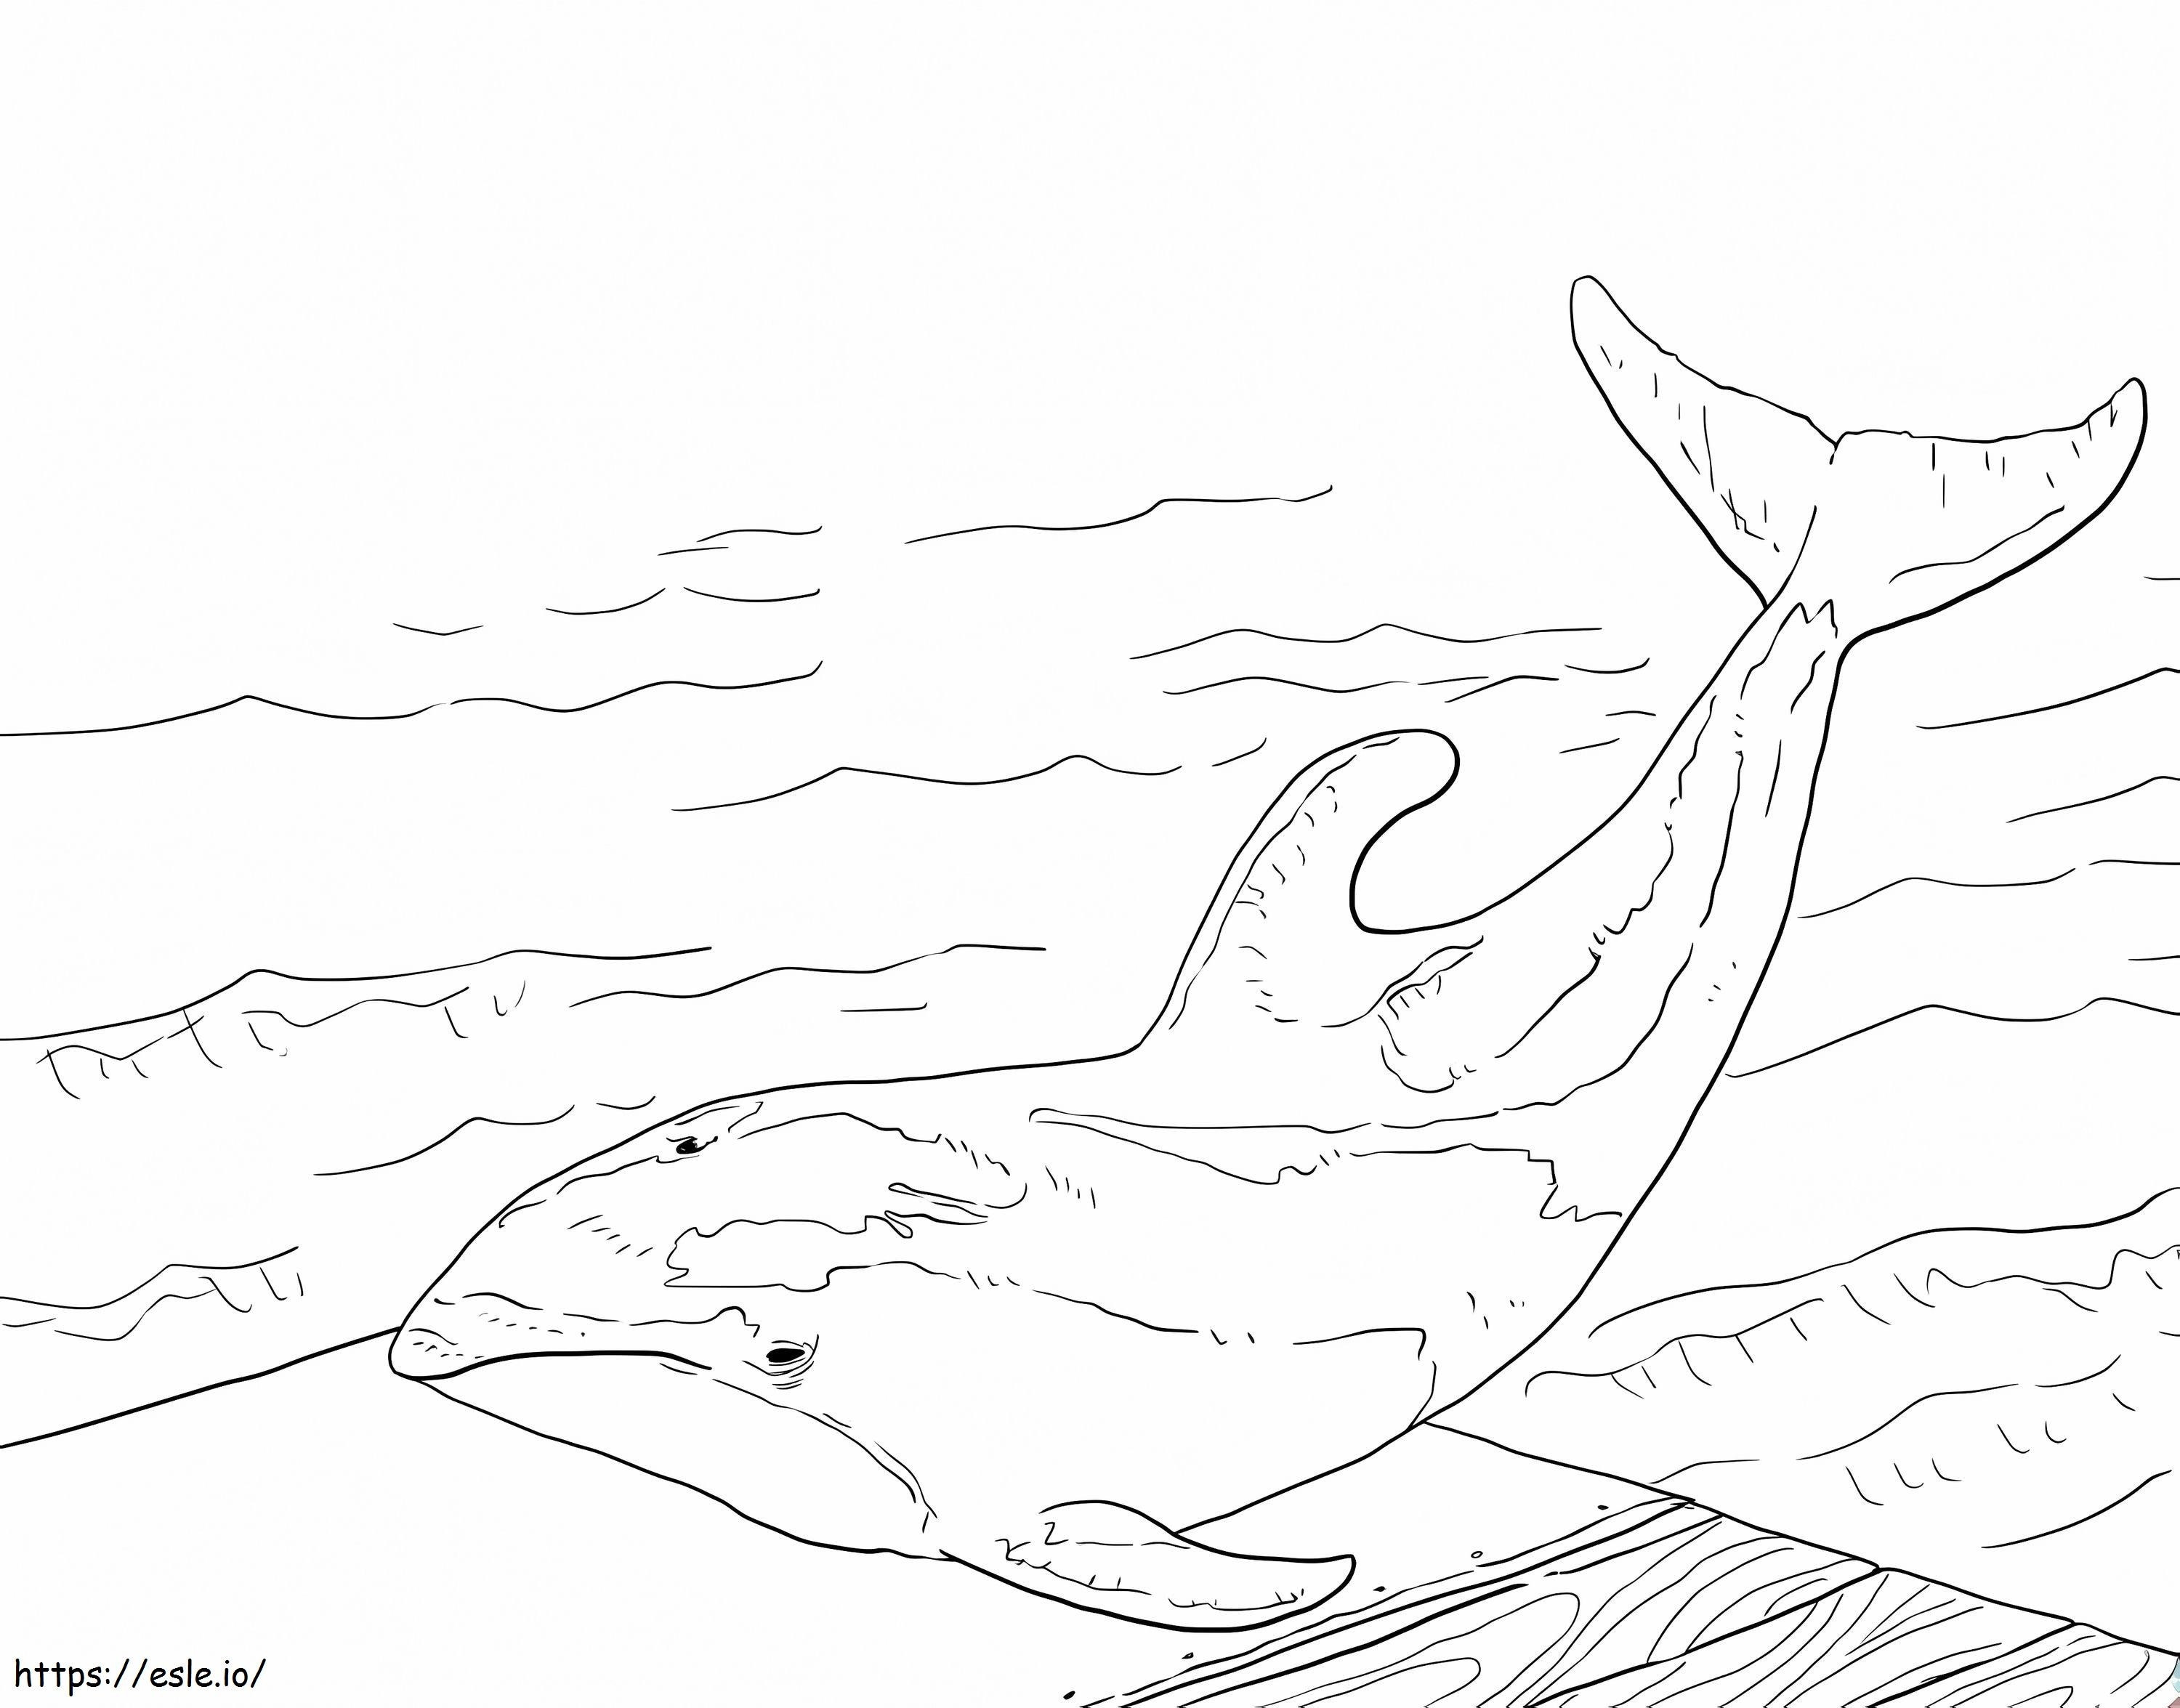 Delfin białoboczny z Pacyfiku kolorowanka